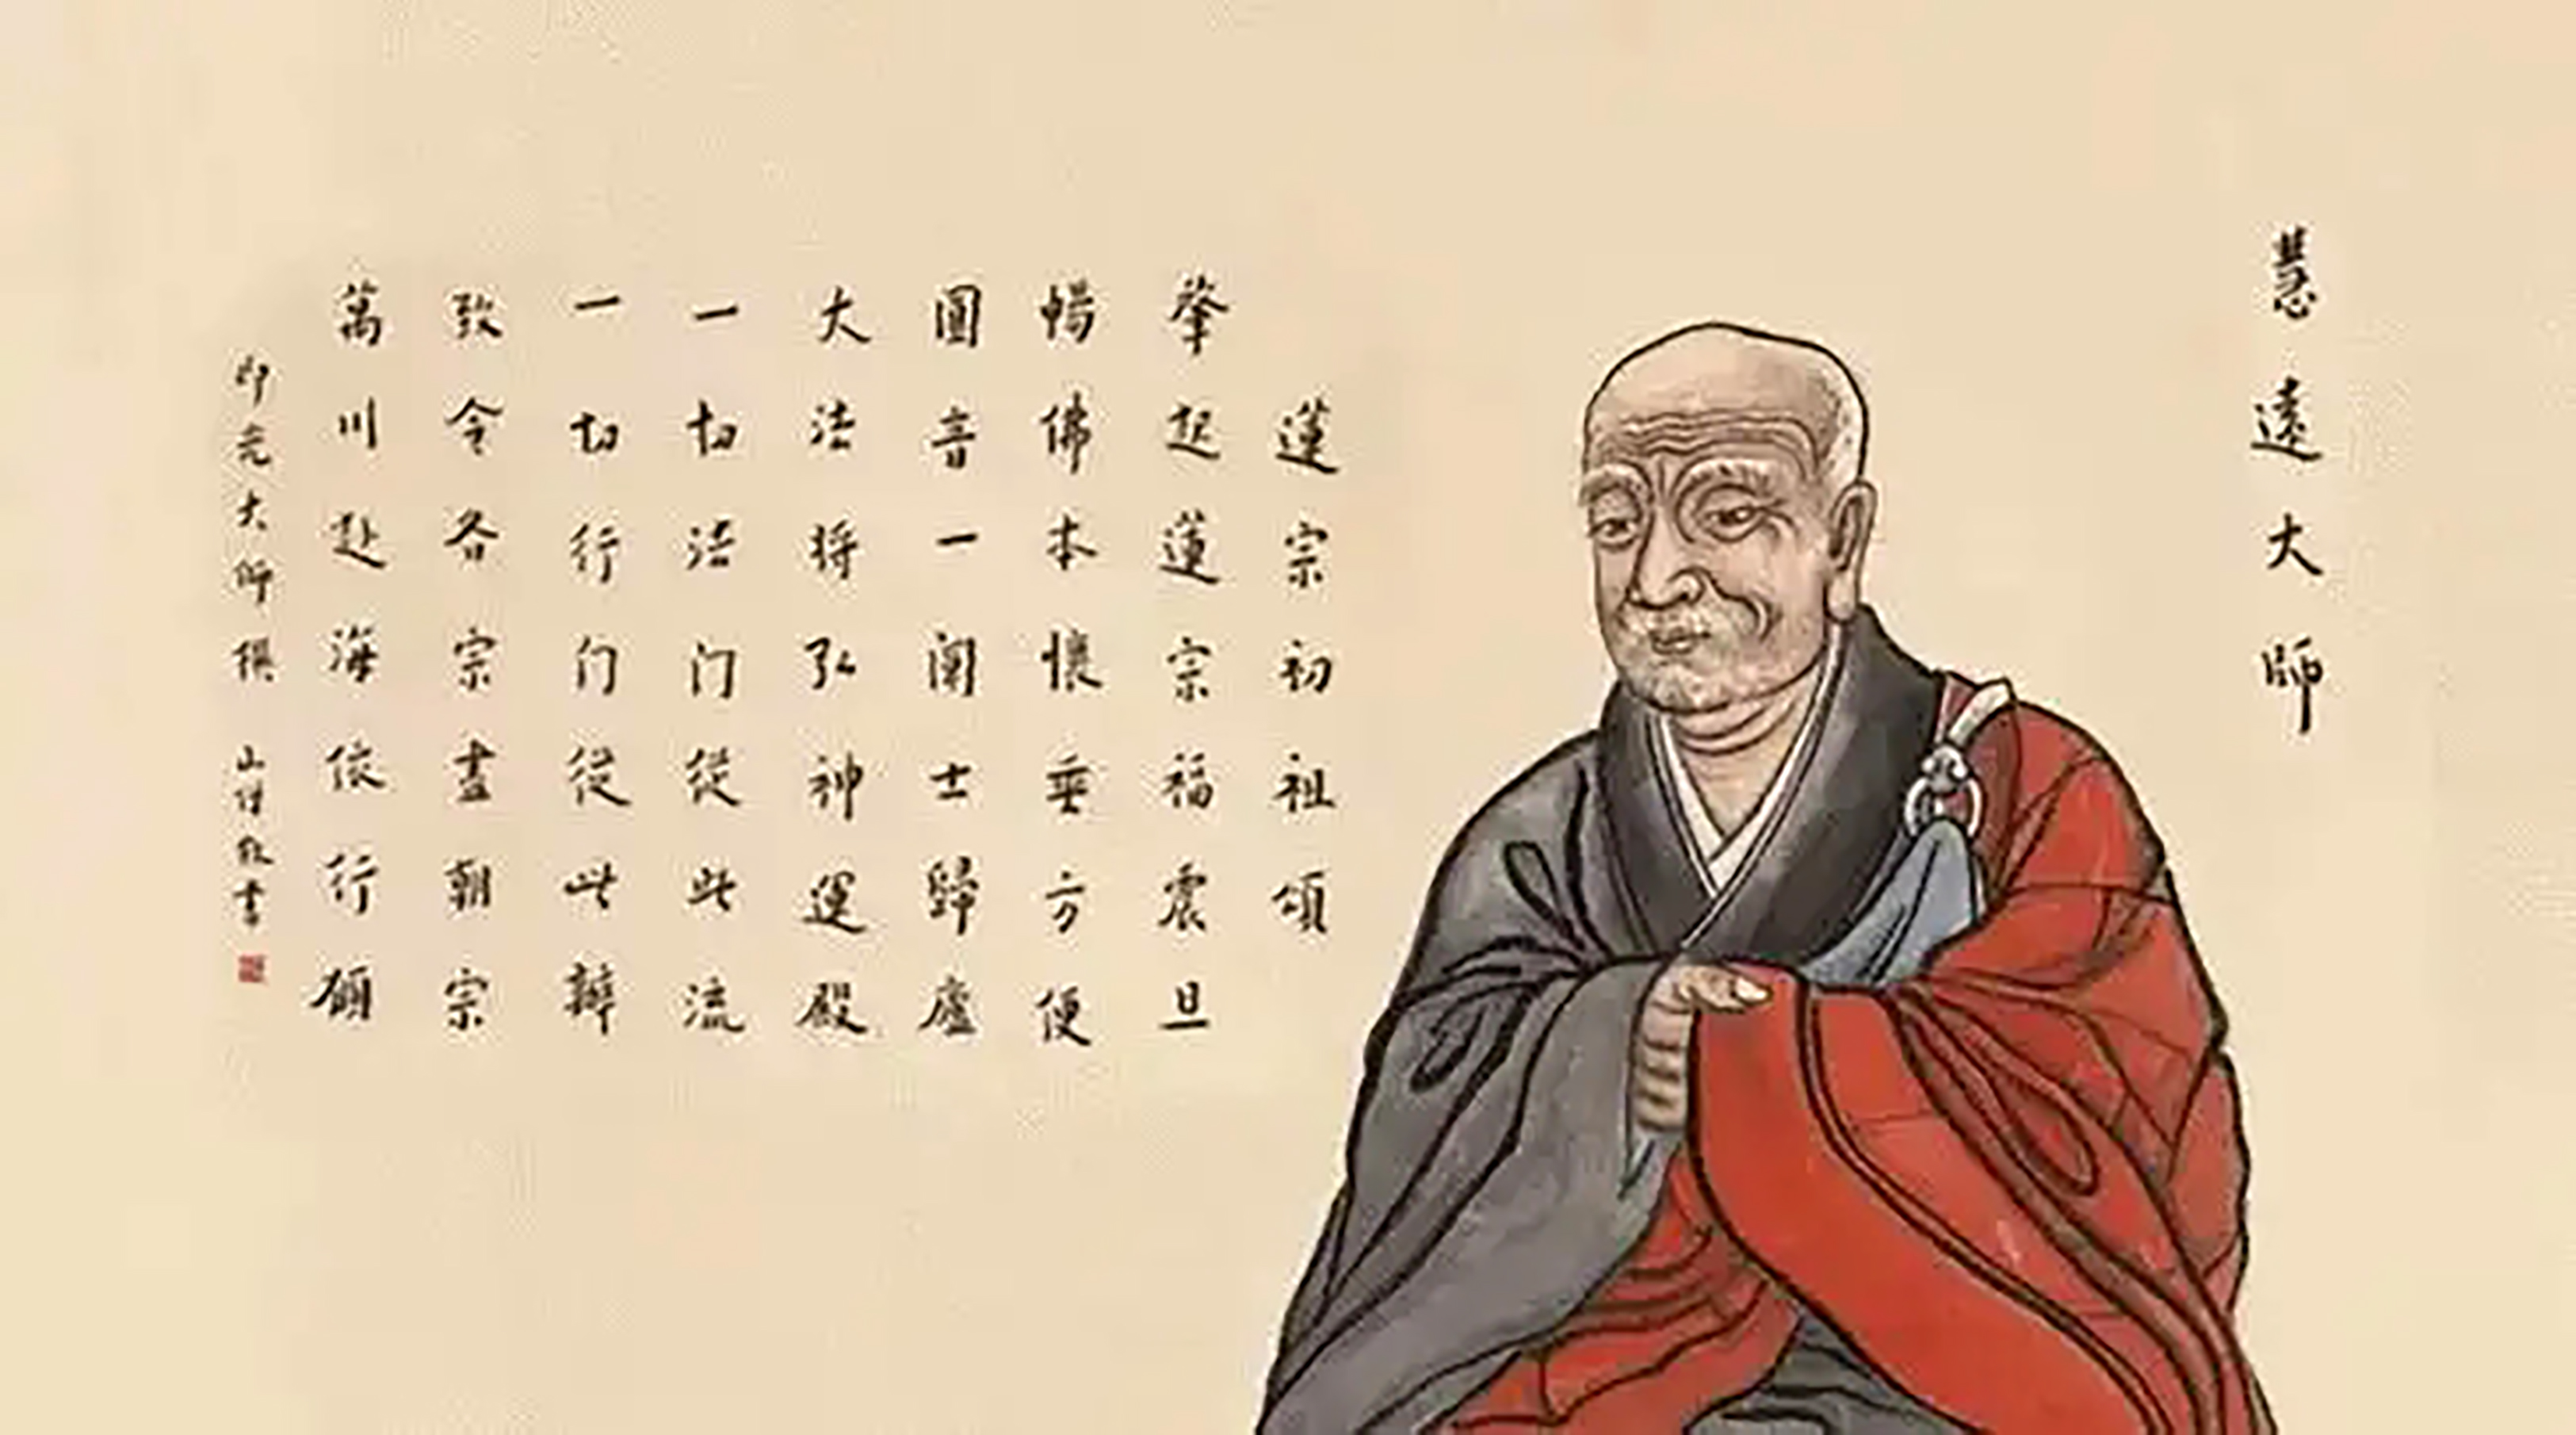 中国佛教有十派，一派为净土宗，庐山东林寺是净土宗的祖庭发祥地